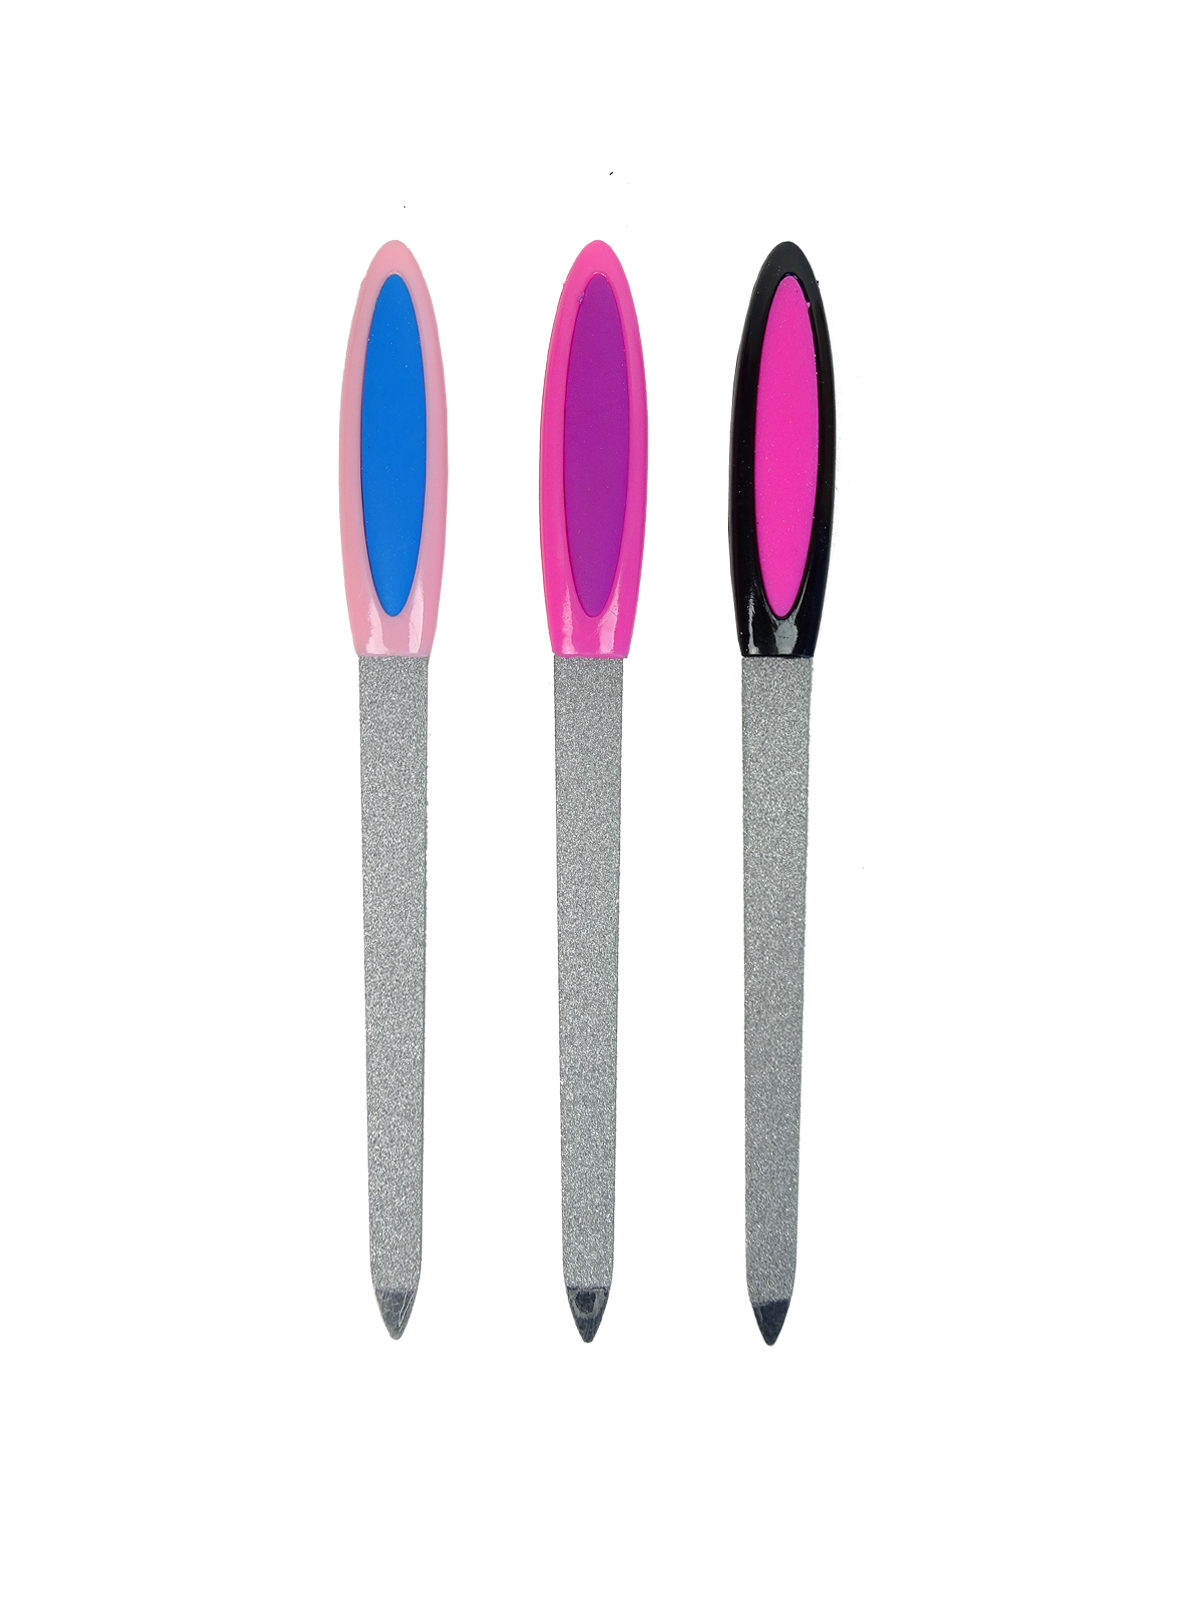 Пилка металлическая для ногтей, прорезиненная ручка, 17 см, цвет МИКС